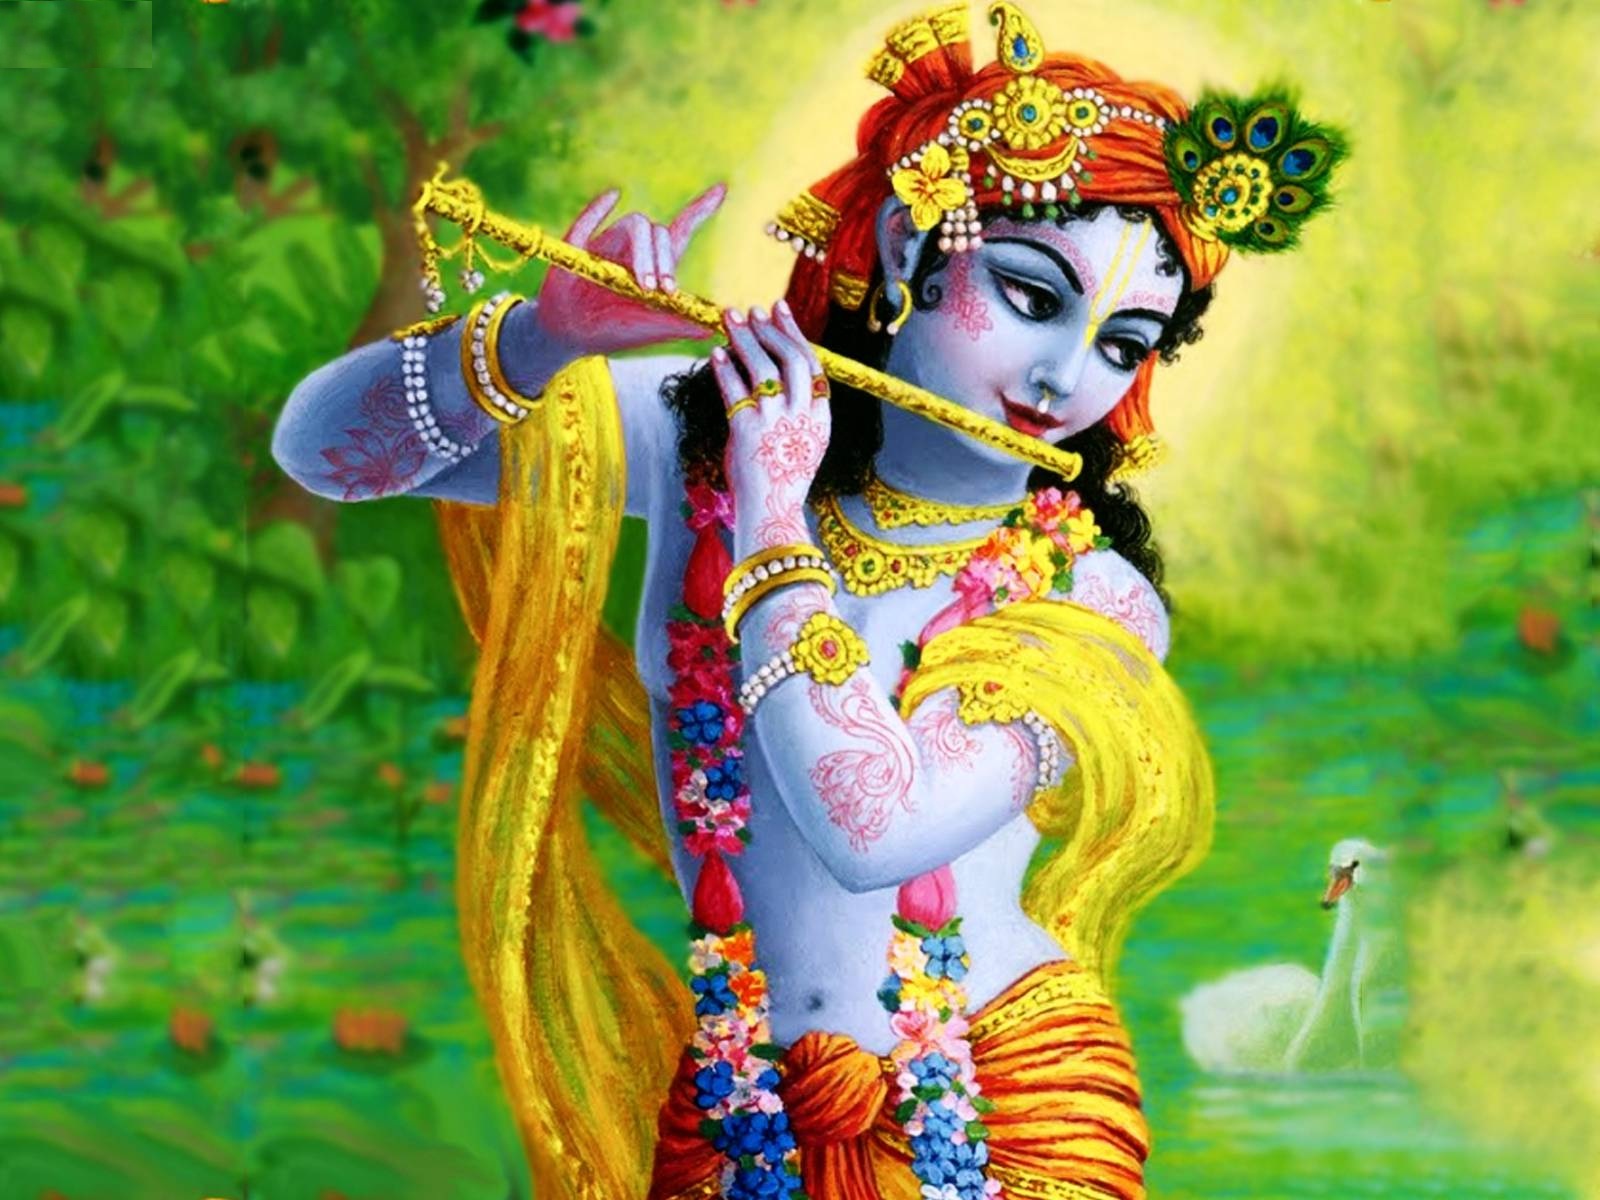 Lord Krishna With Flute - 1600x1200 Wallpaper 